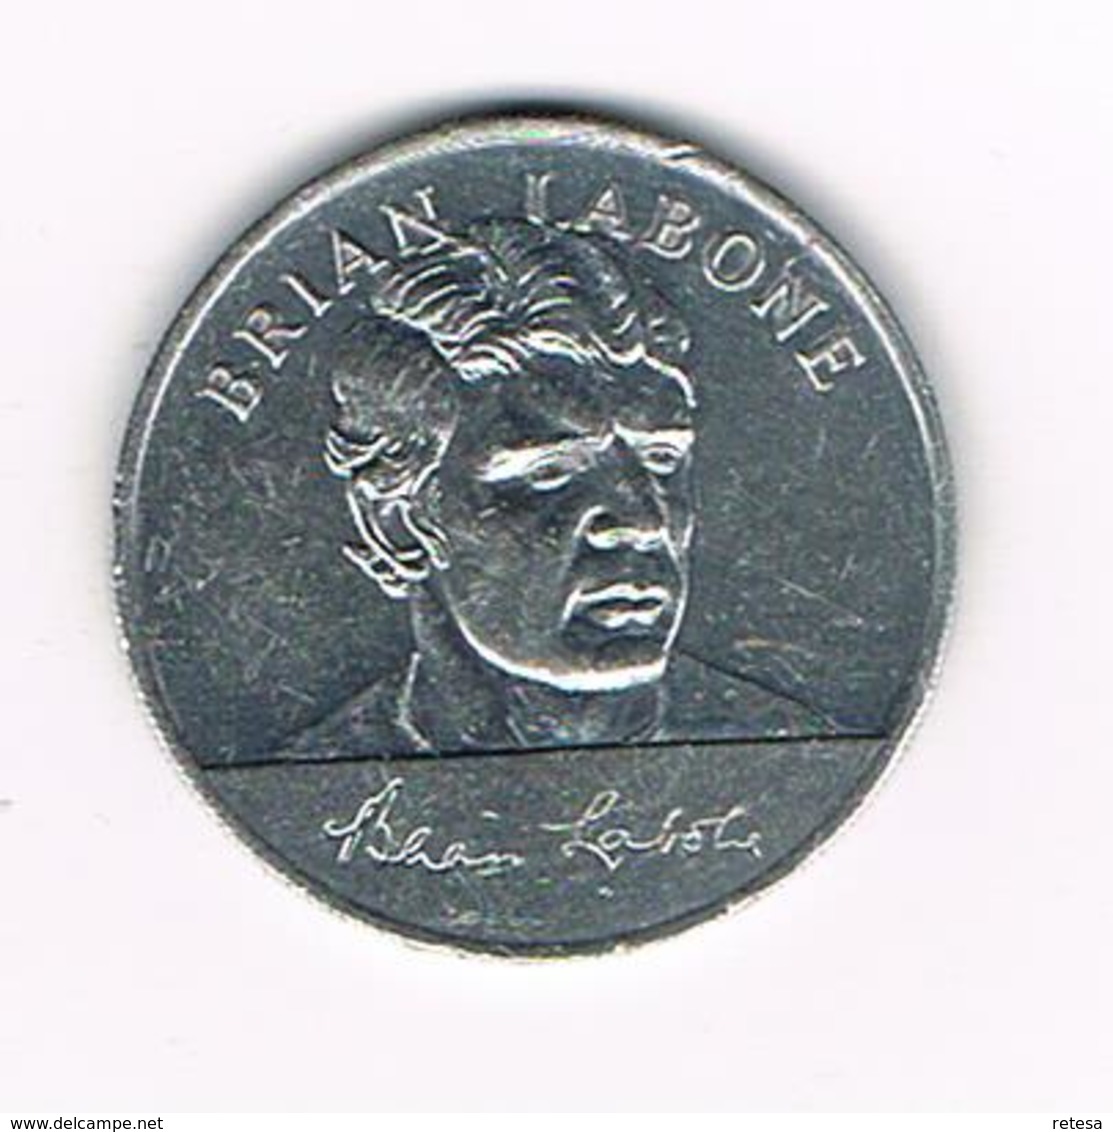 //  TOKEN  BRIAN LABONE   ENGLAND WORLD CUP  SQUAD  MEXICO  1970 ESSO - Monete Allungate (penny Souvenirs)